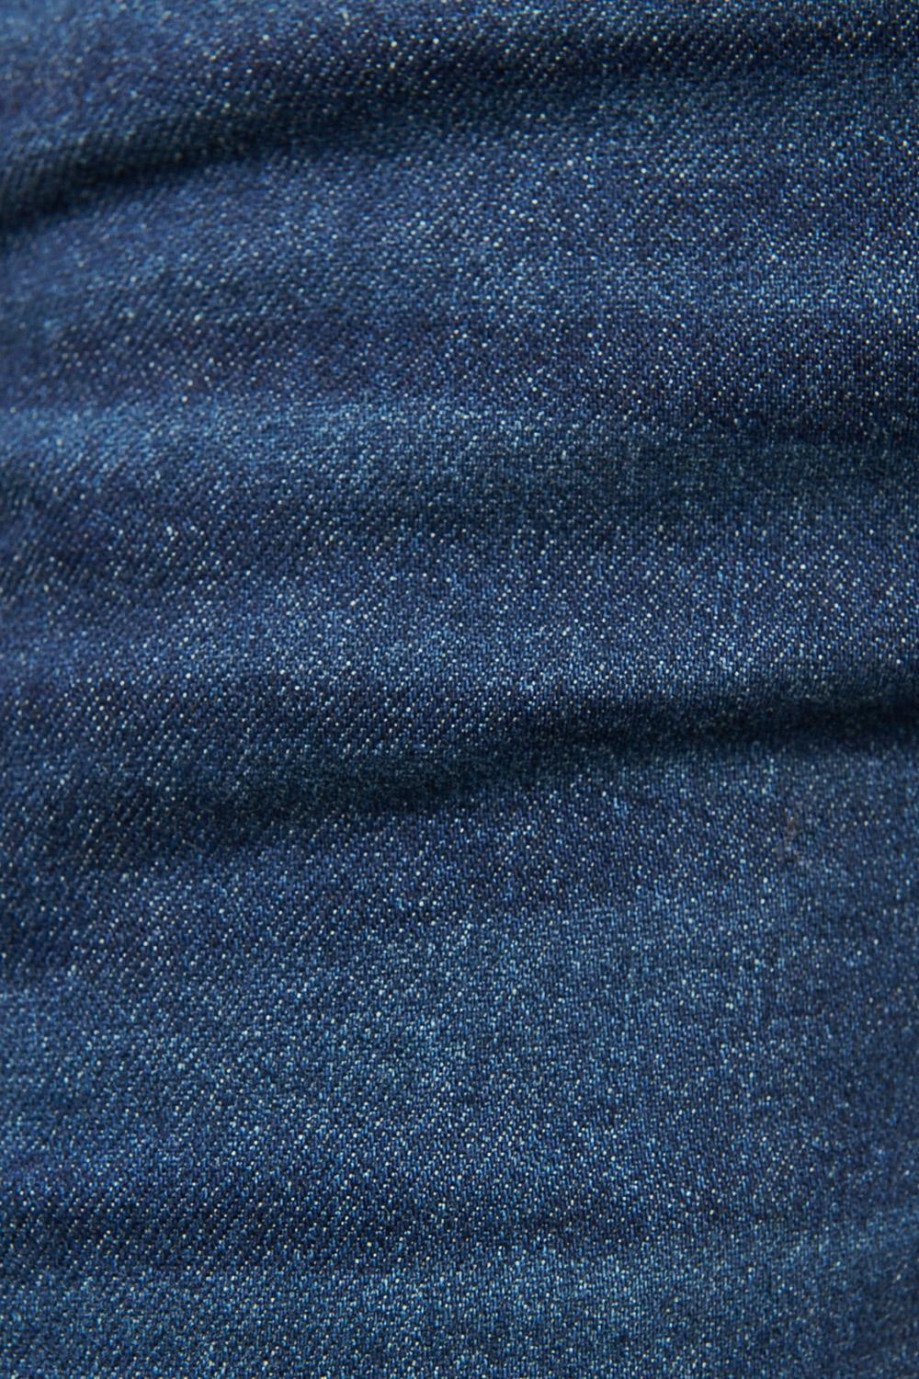 Jean tiro bajo slim azul intenso con hilos en contraste